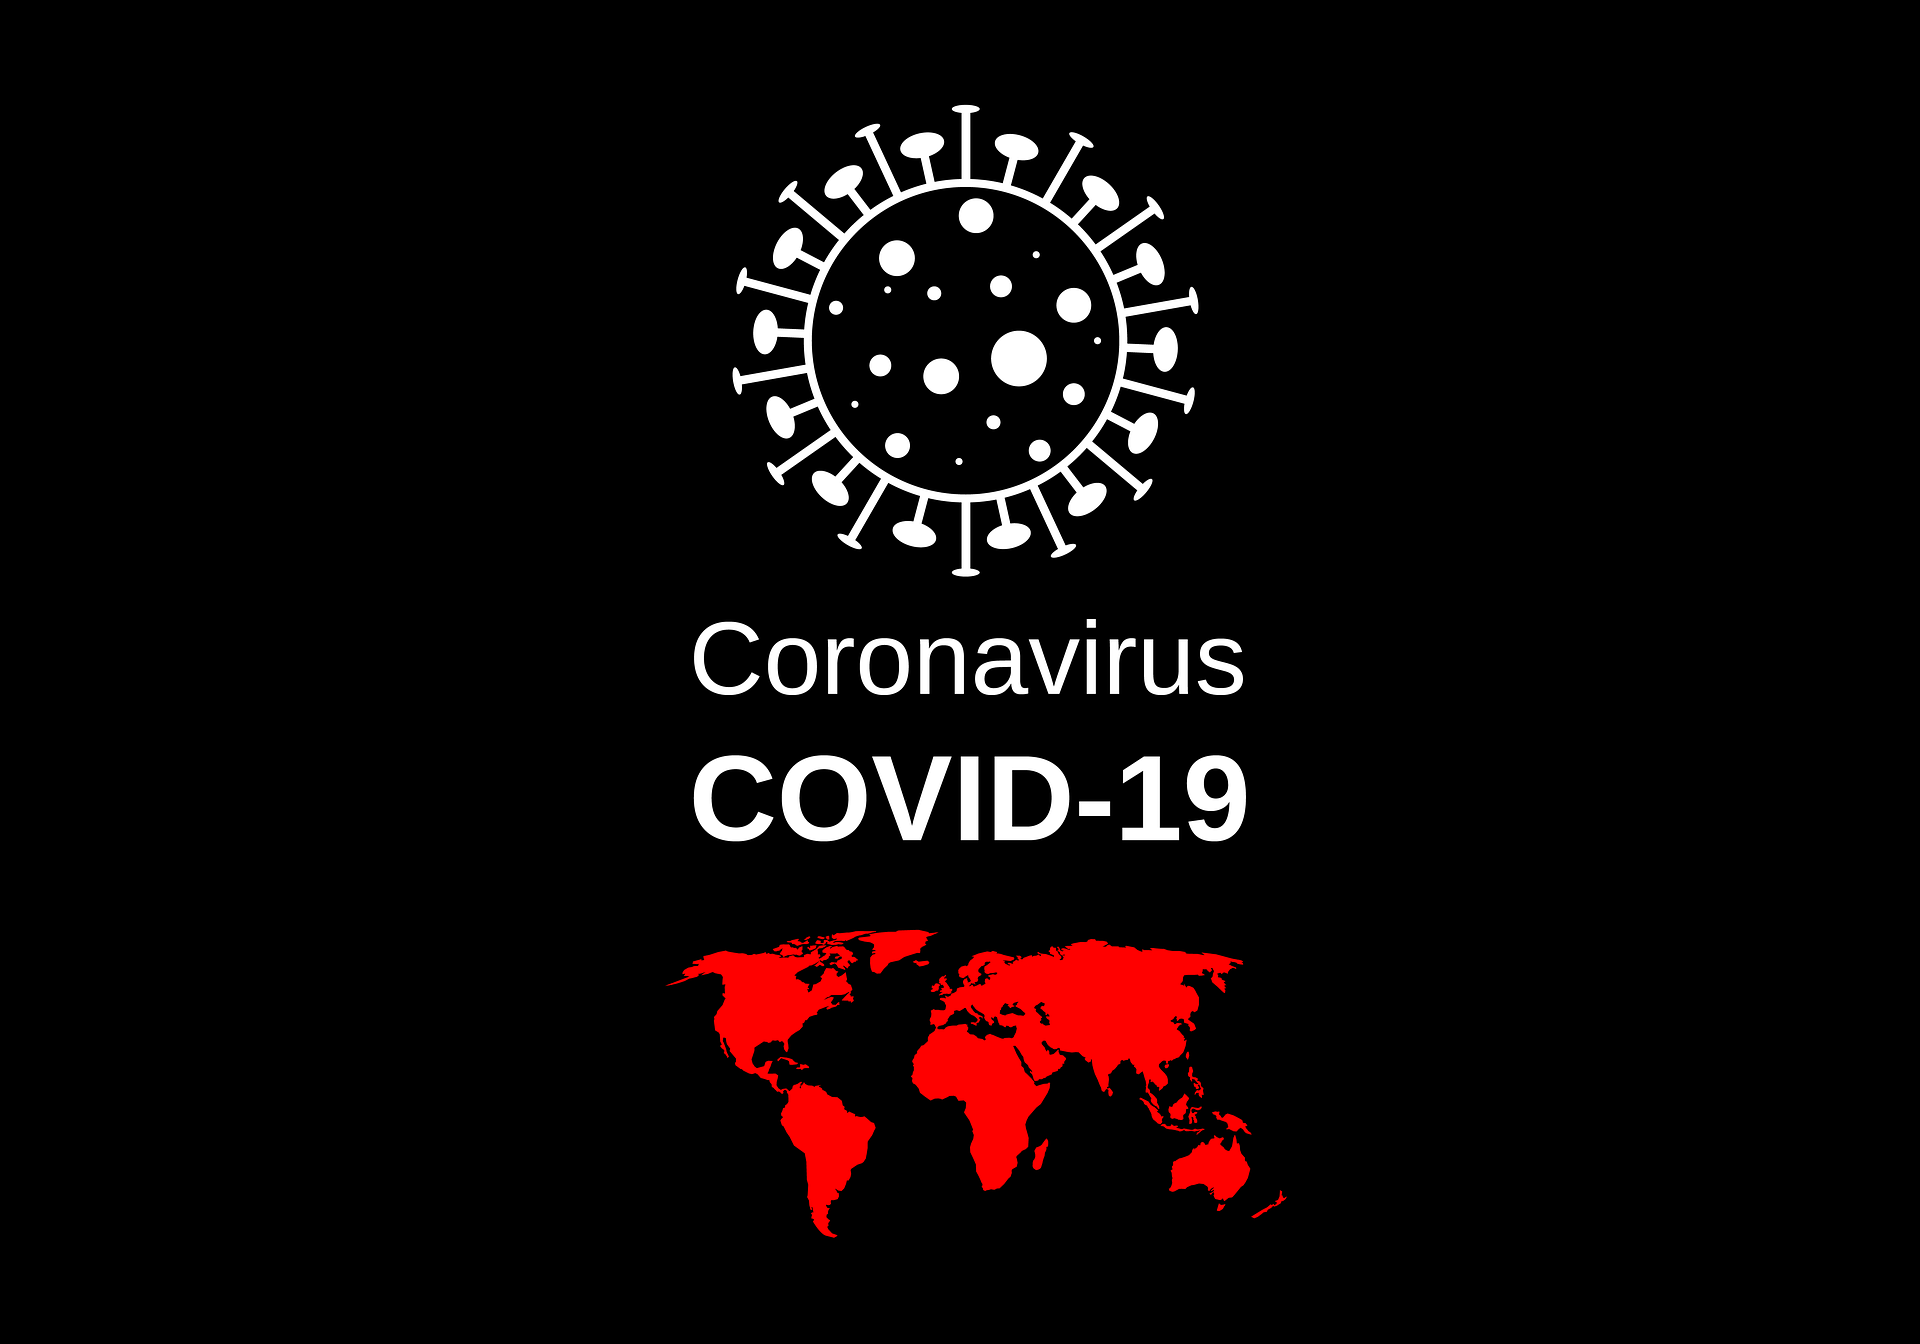 Koronawirus, a portale randkowe. Jak poznawać nowe osoby w czasie epidemii?